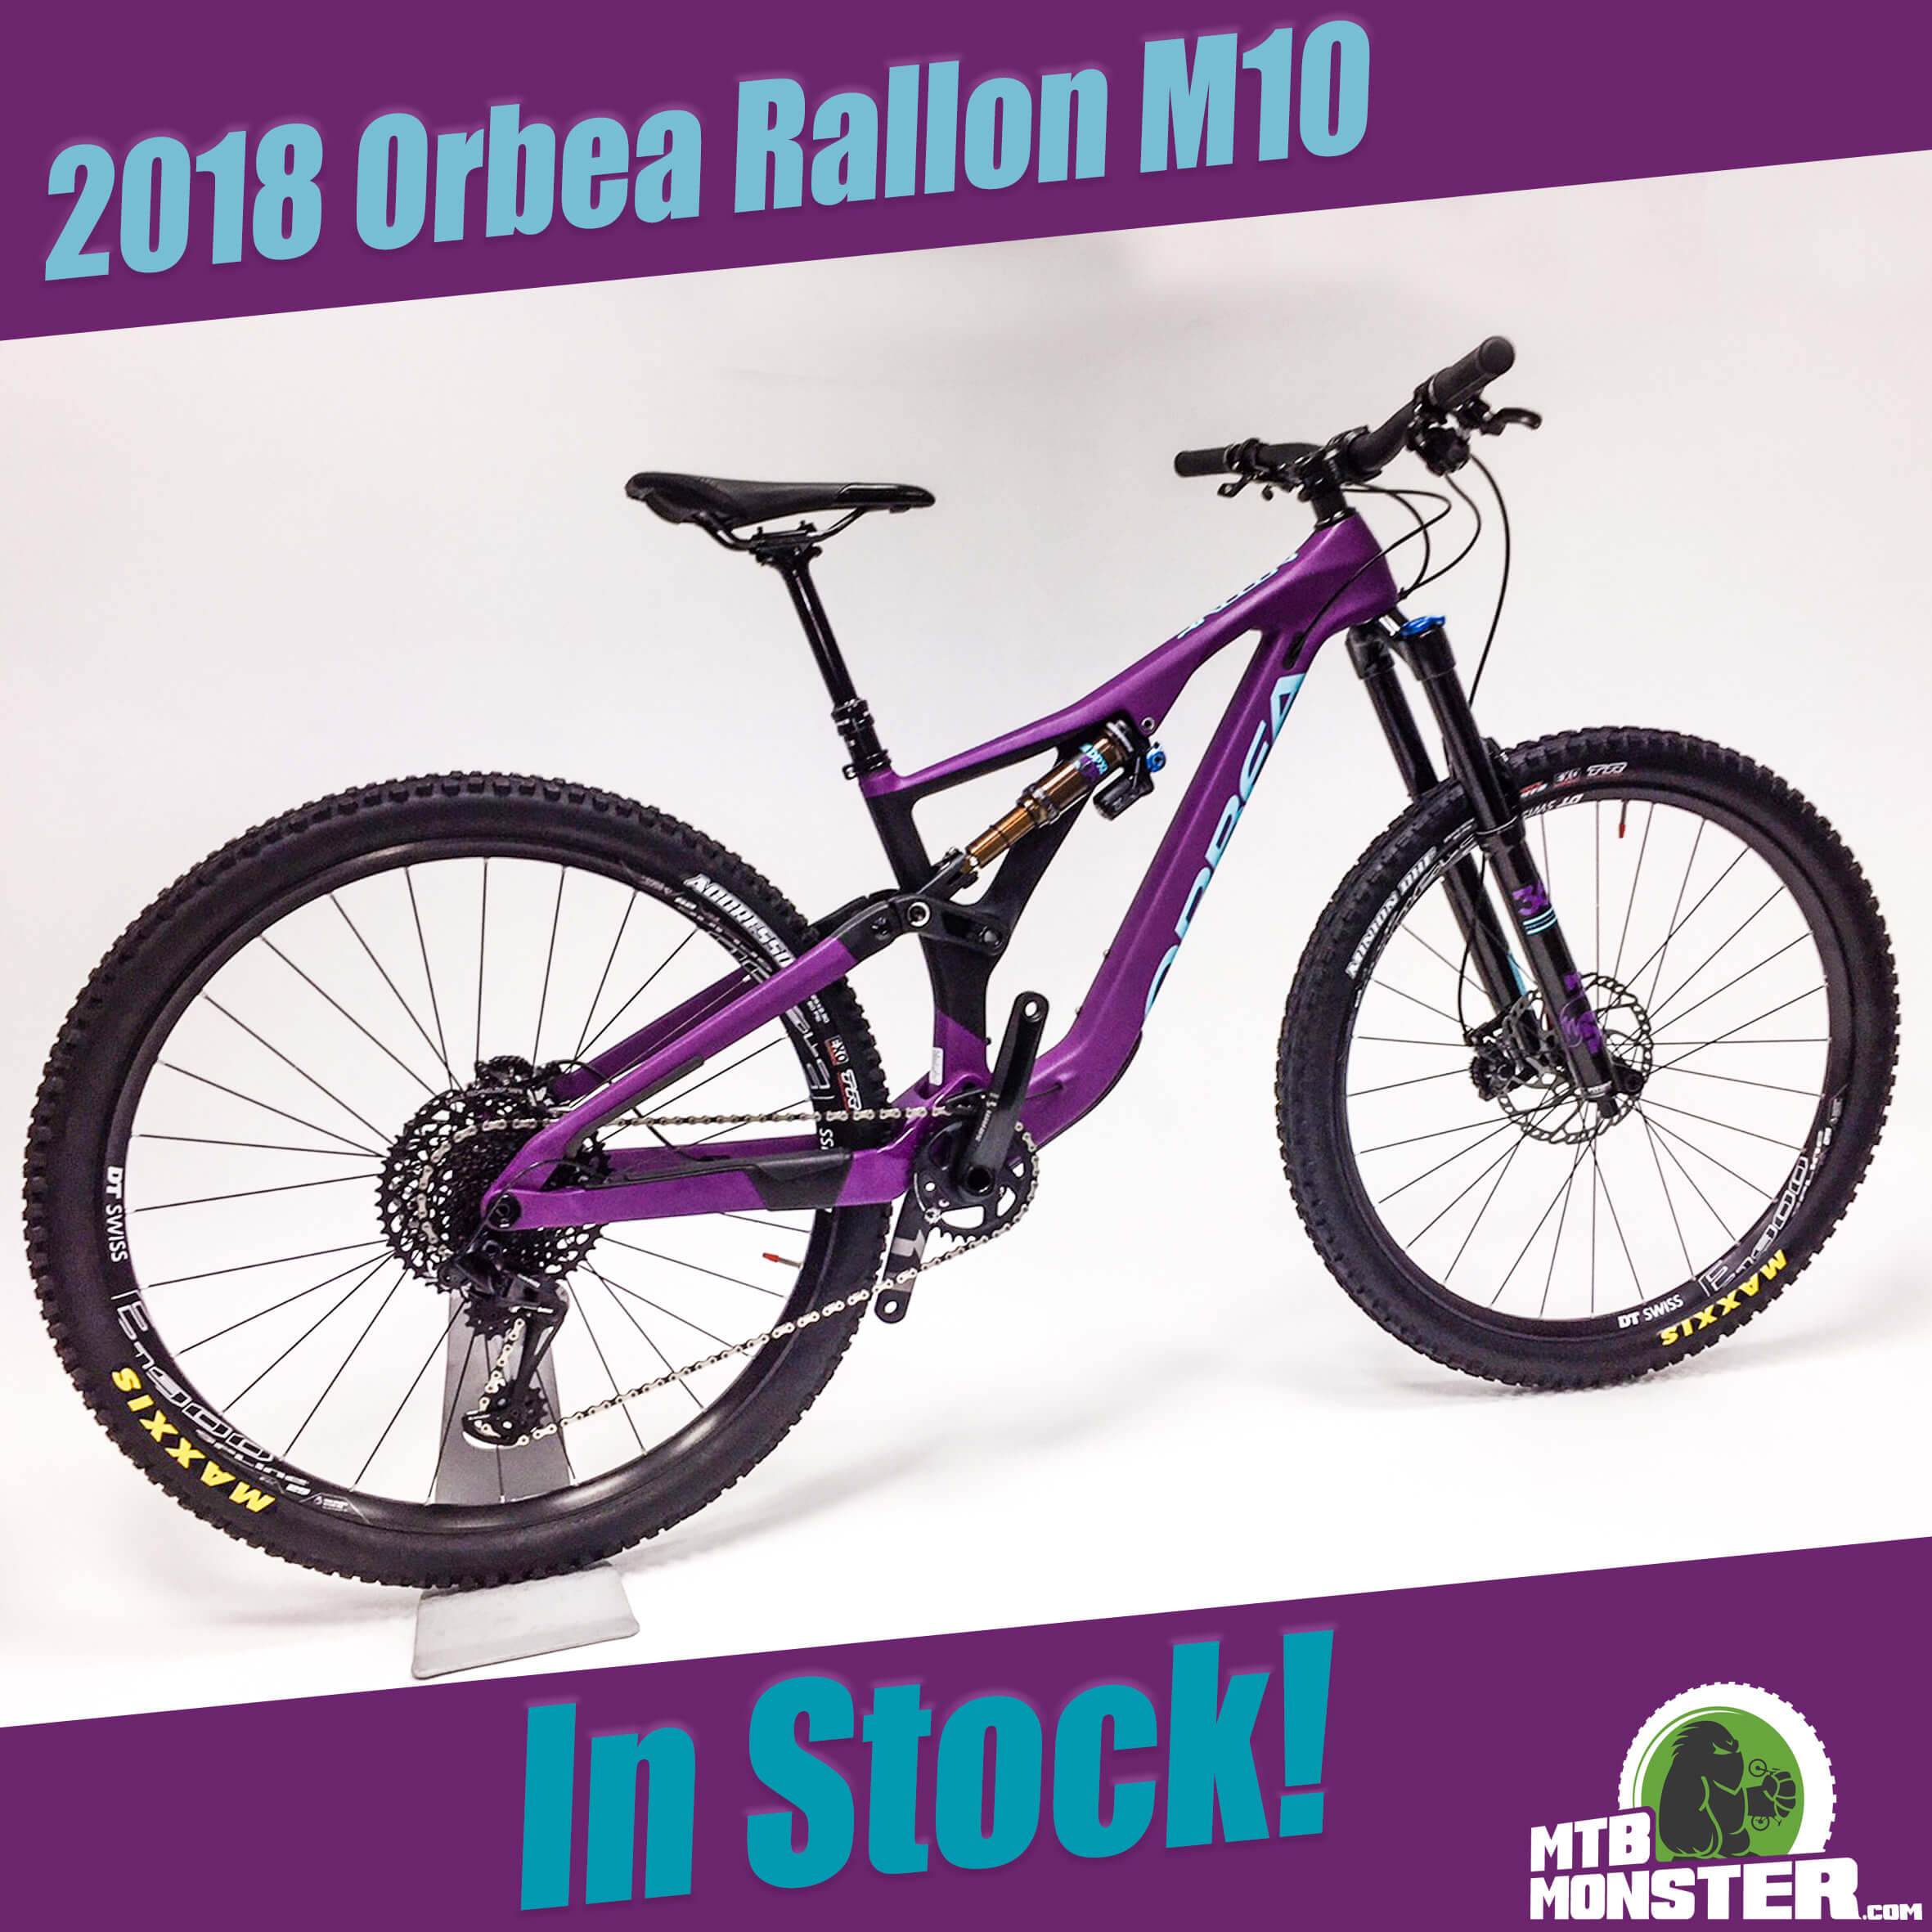 2018 orbea rallon m10